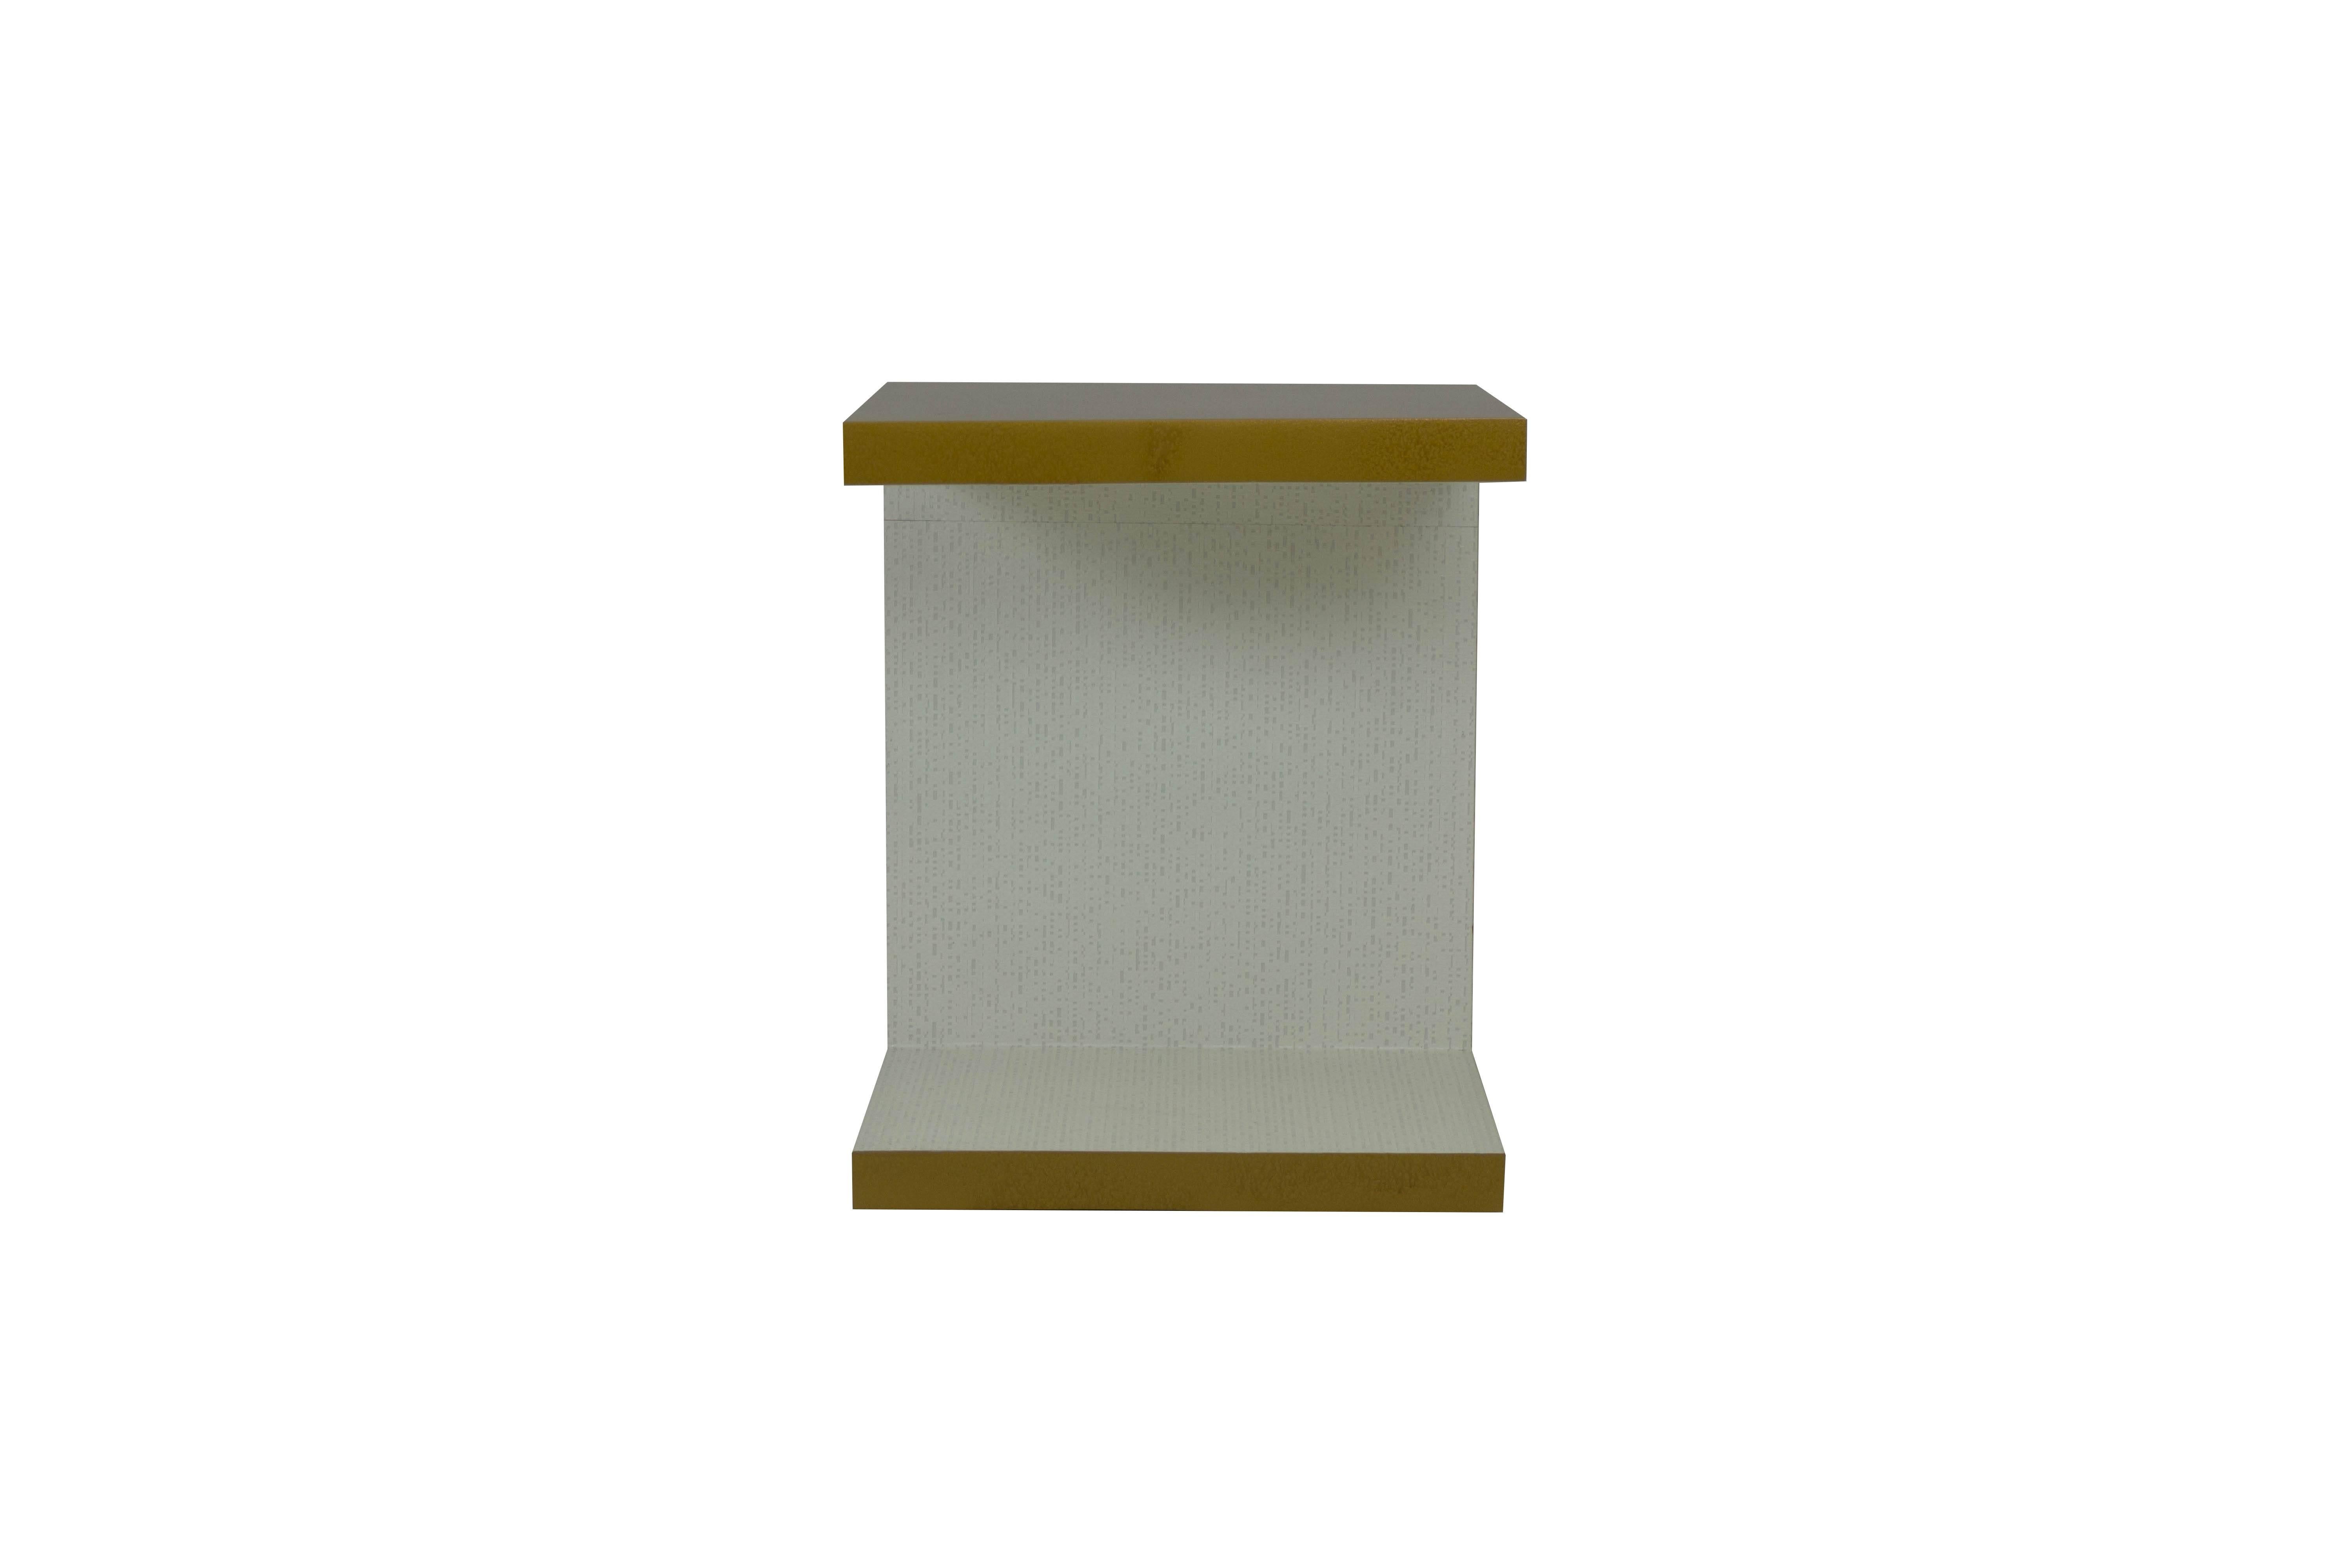 Grande table d'appoint moderne laquée à l'extérieur en faux bronze, donnant un aspect glacé et légèrement texturé. L'intérieur est recouvert d'un revêtement mural en vinyle gaufré blanc. Idéal pour empiler les livres sur la base, ce qui permet de ne